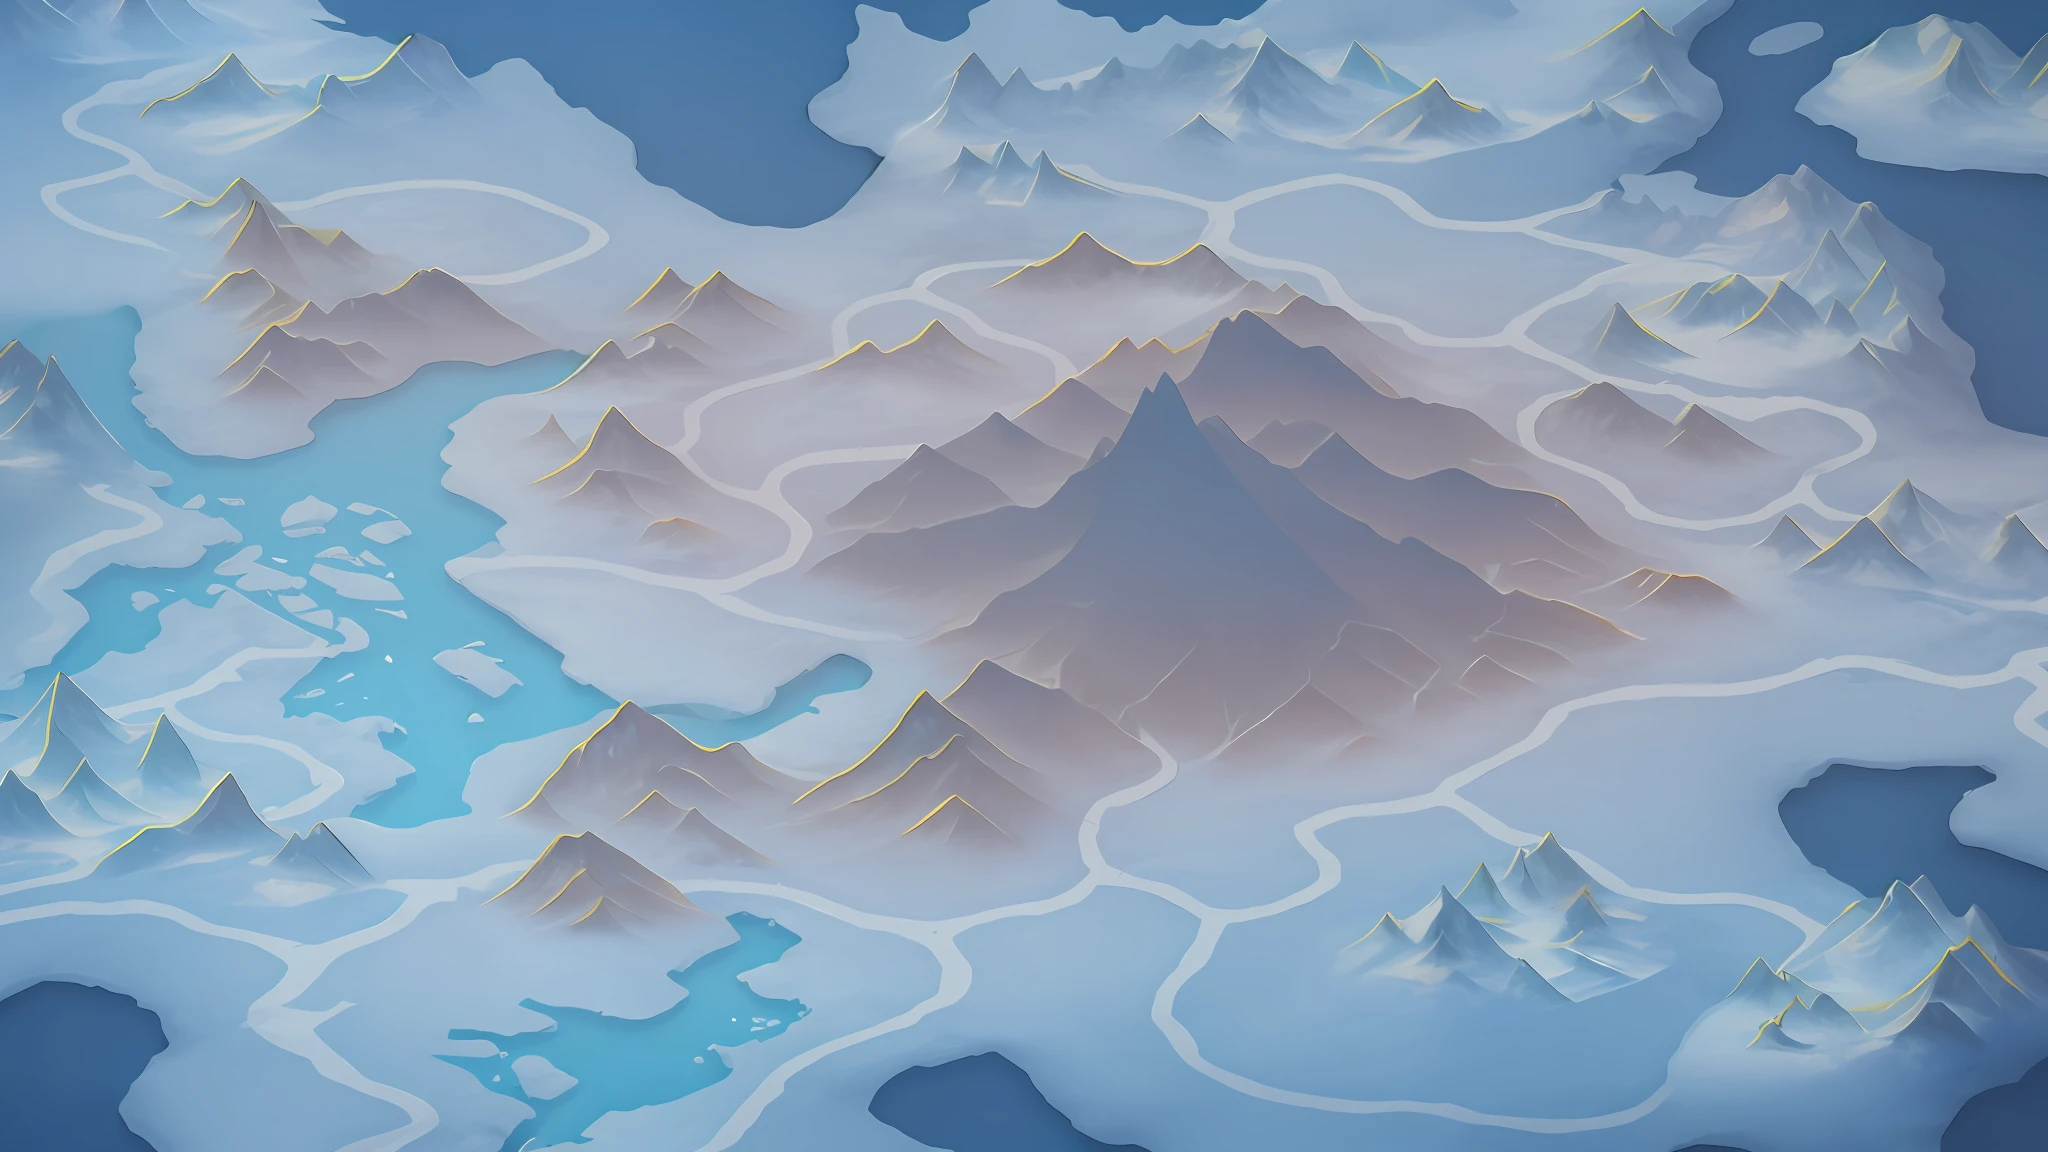 有一张大地图，上面有山脉和湖泊, 冰冻苔原背景, 冰山, 等距幻想地图, 背景中的冰山, 冰山 in the background, 山地背景, 游戏地图绘景, 山景, 雪山, 山海, 远处的冰山, 背景山脉, 详细风景 —宽度 672